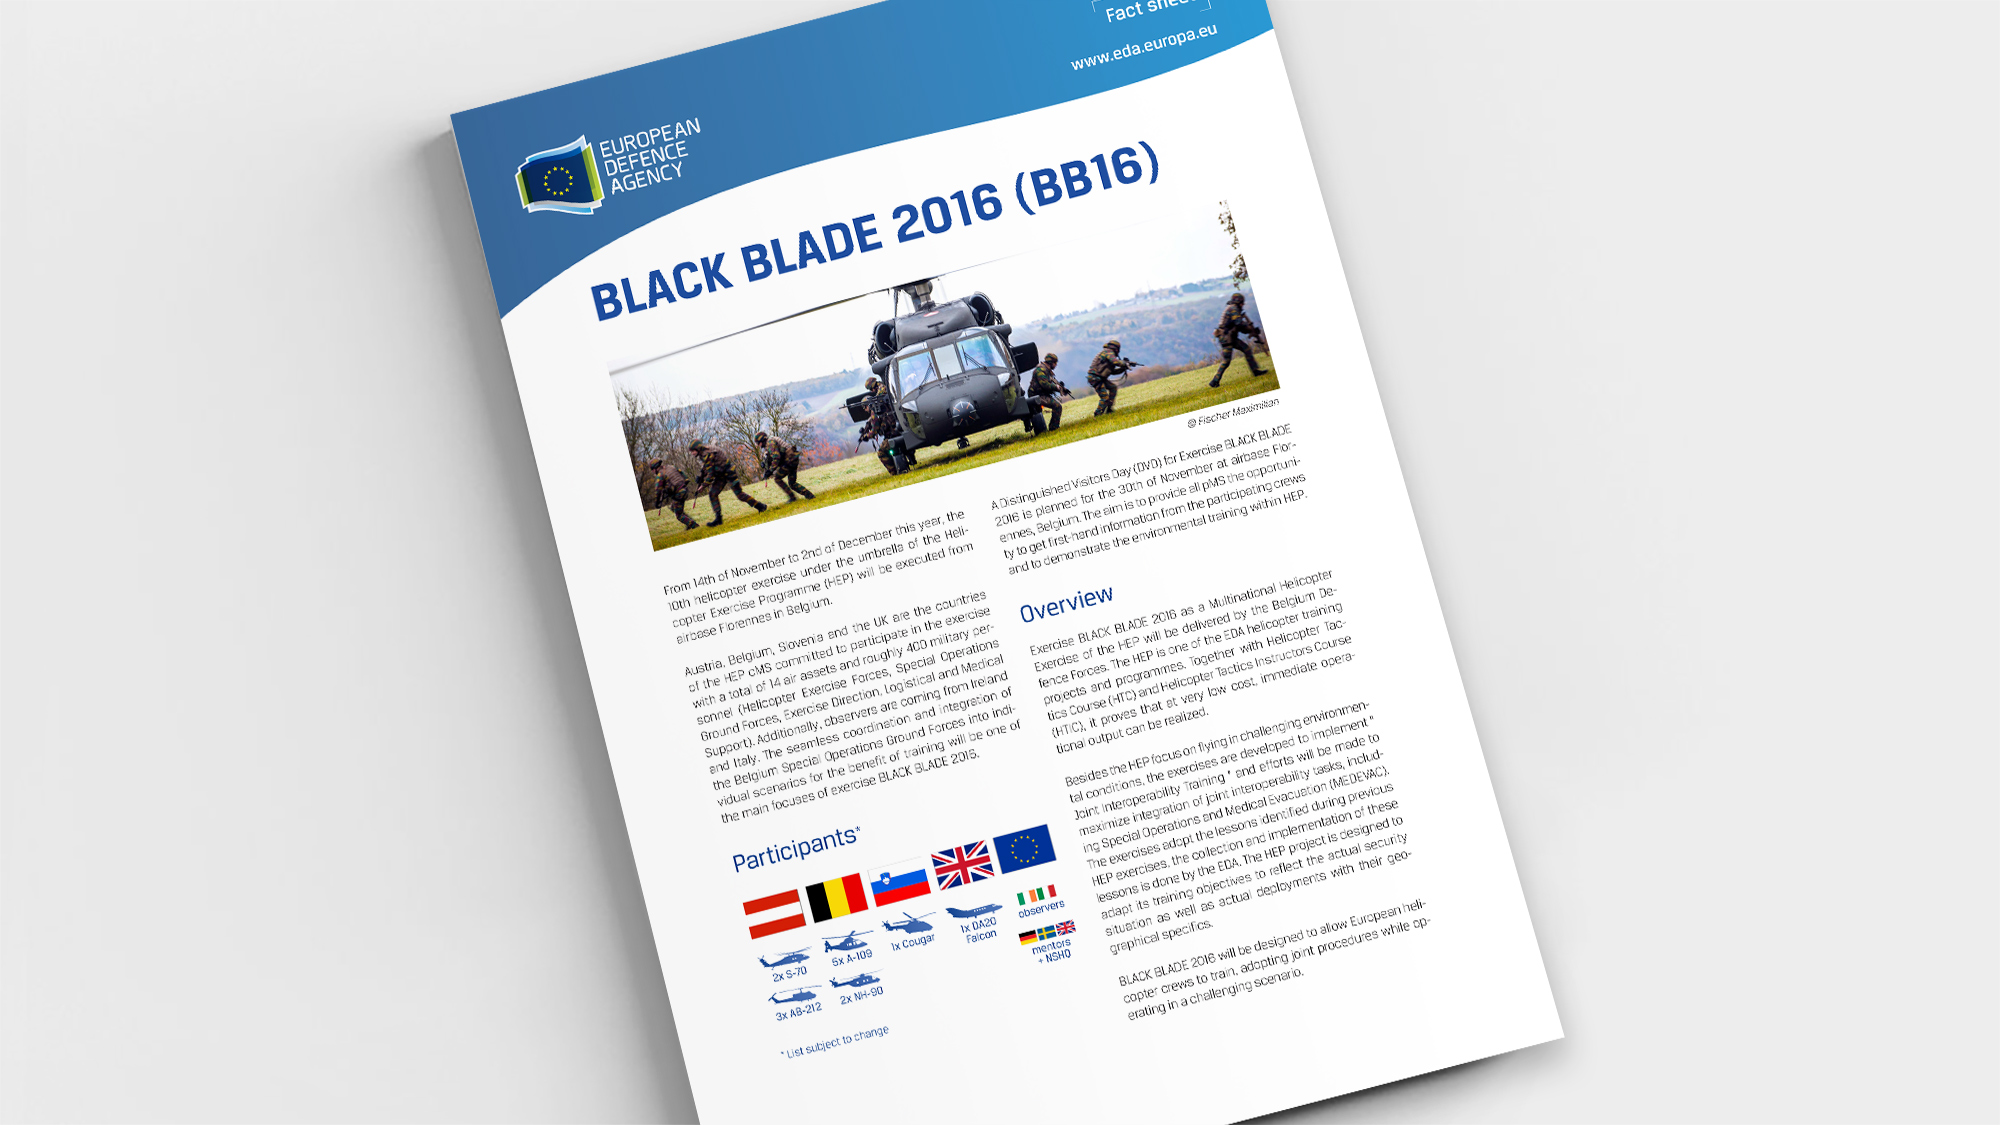 Factsheet BLACK BLADE 2016 (BB16)